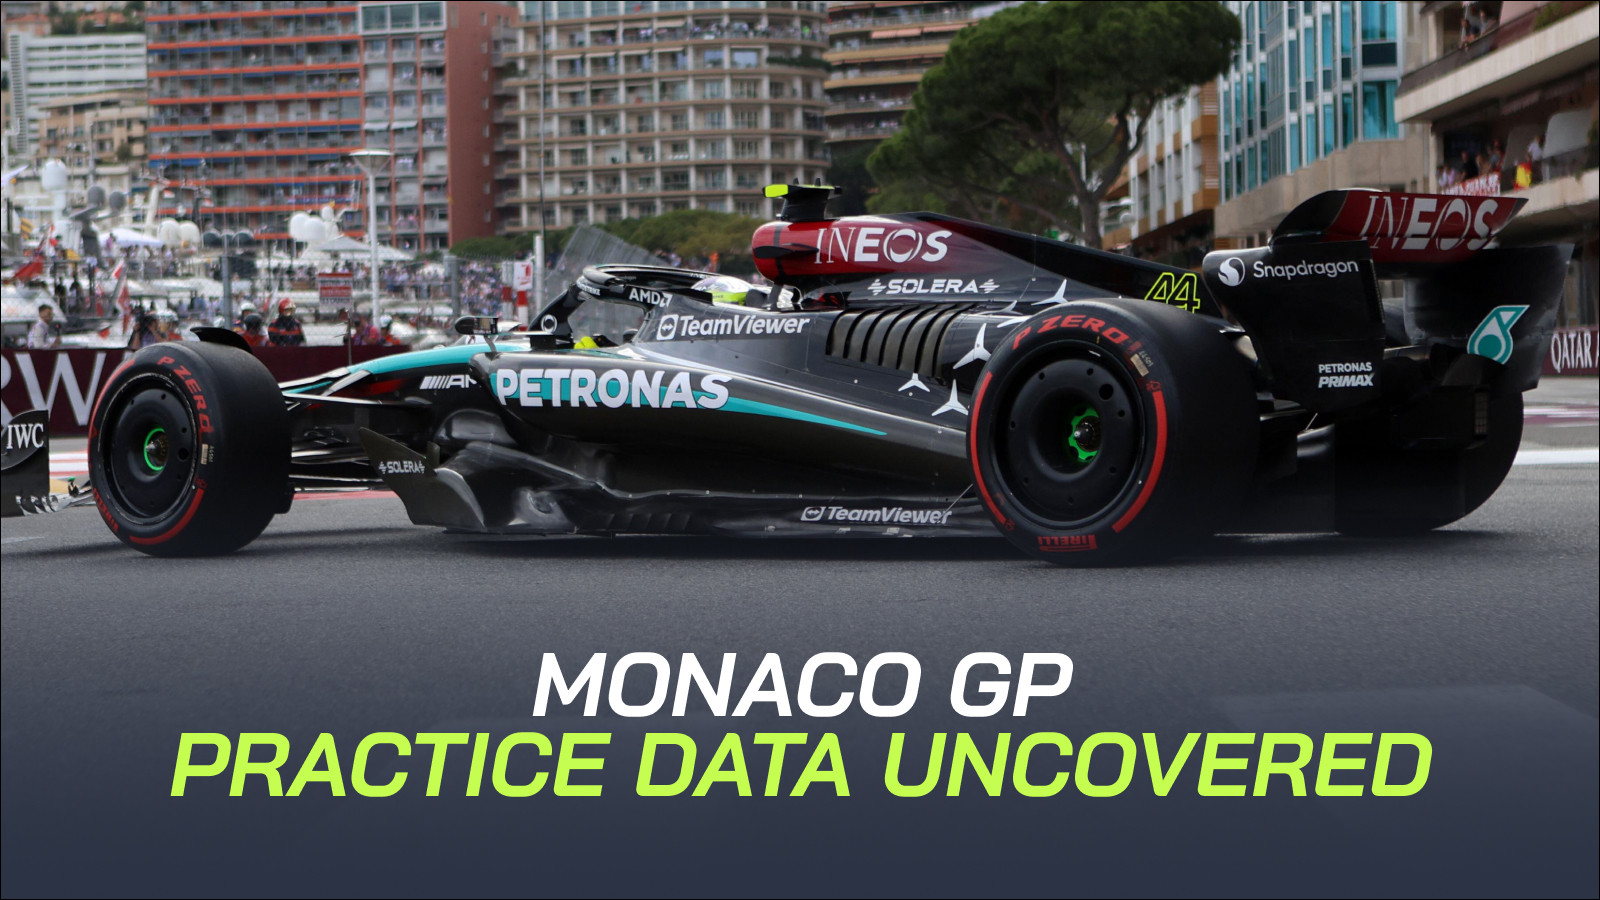 Lewis Hamilton in Monaco Practice